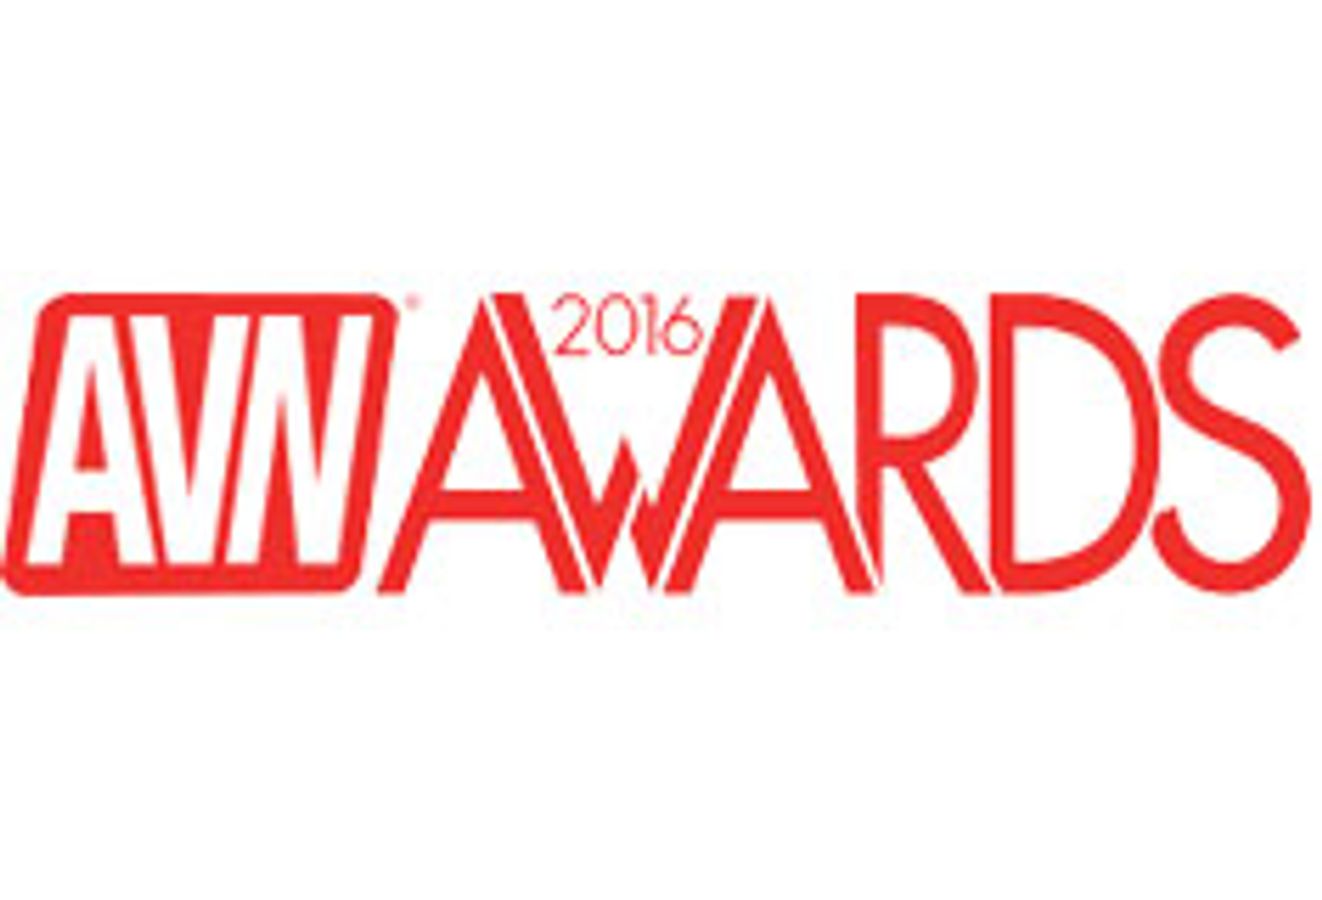 AVN Awards 2016